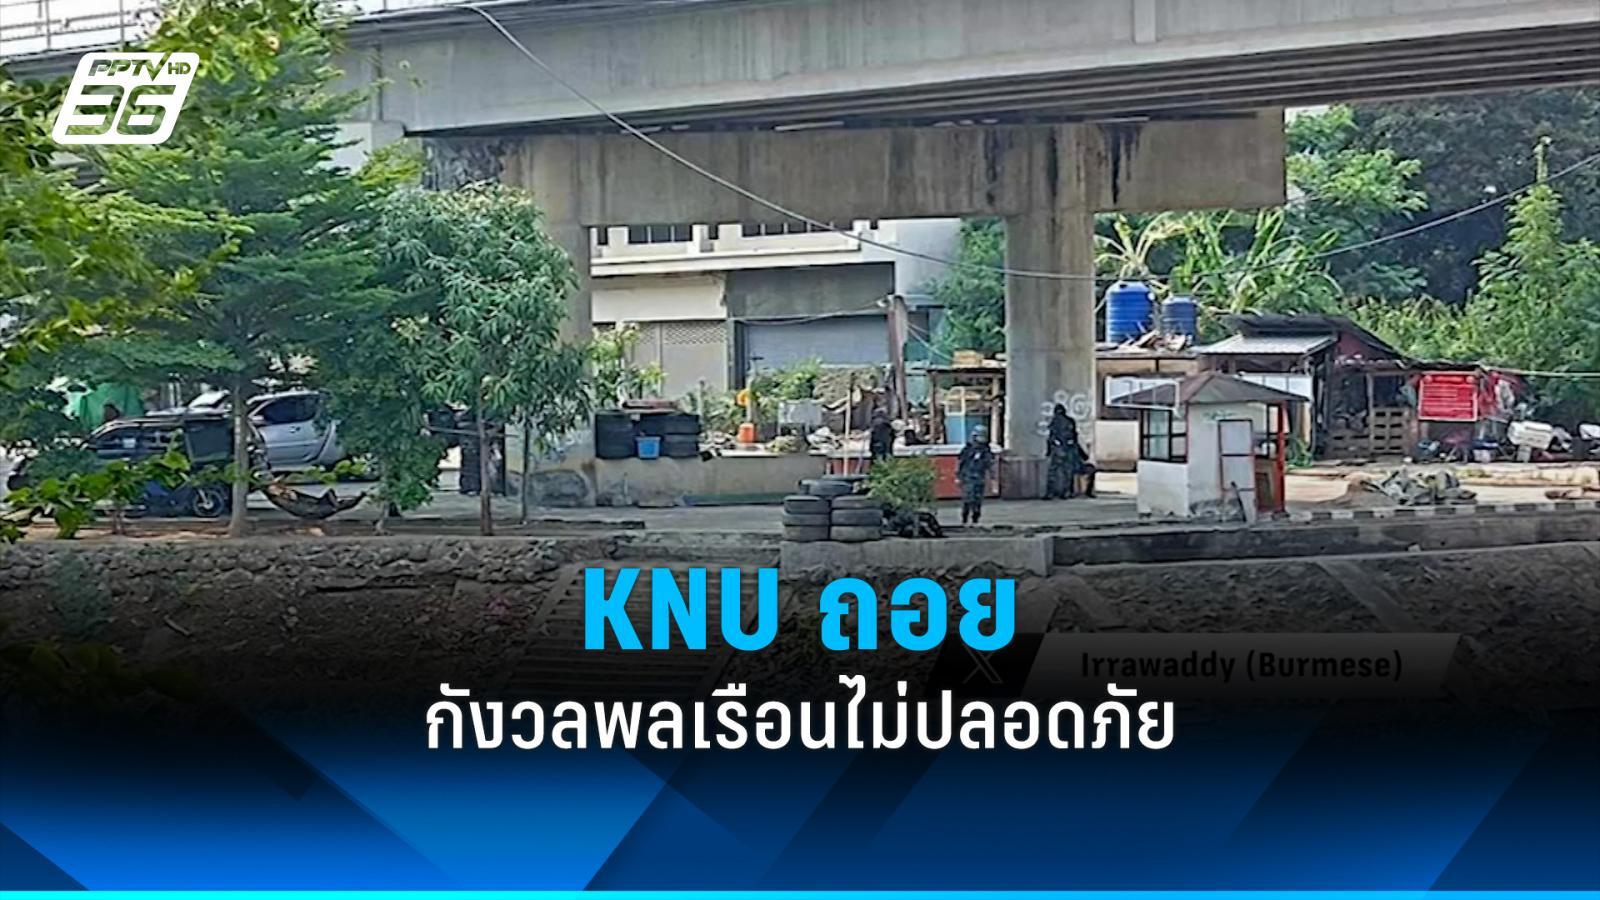 knu ถอยจากสะพานไทย-เมียนมา กังวลพลเรือนไม่ปลอดภัย